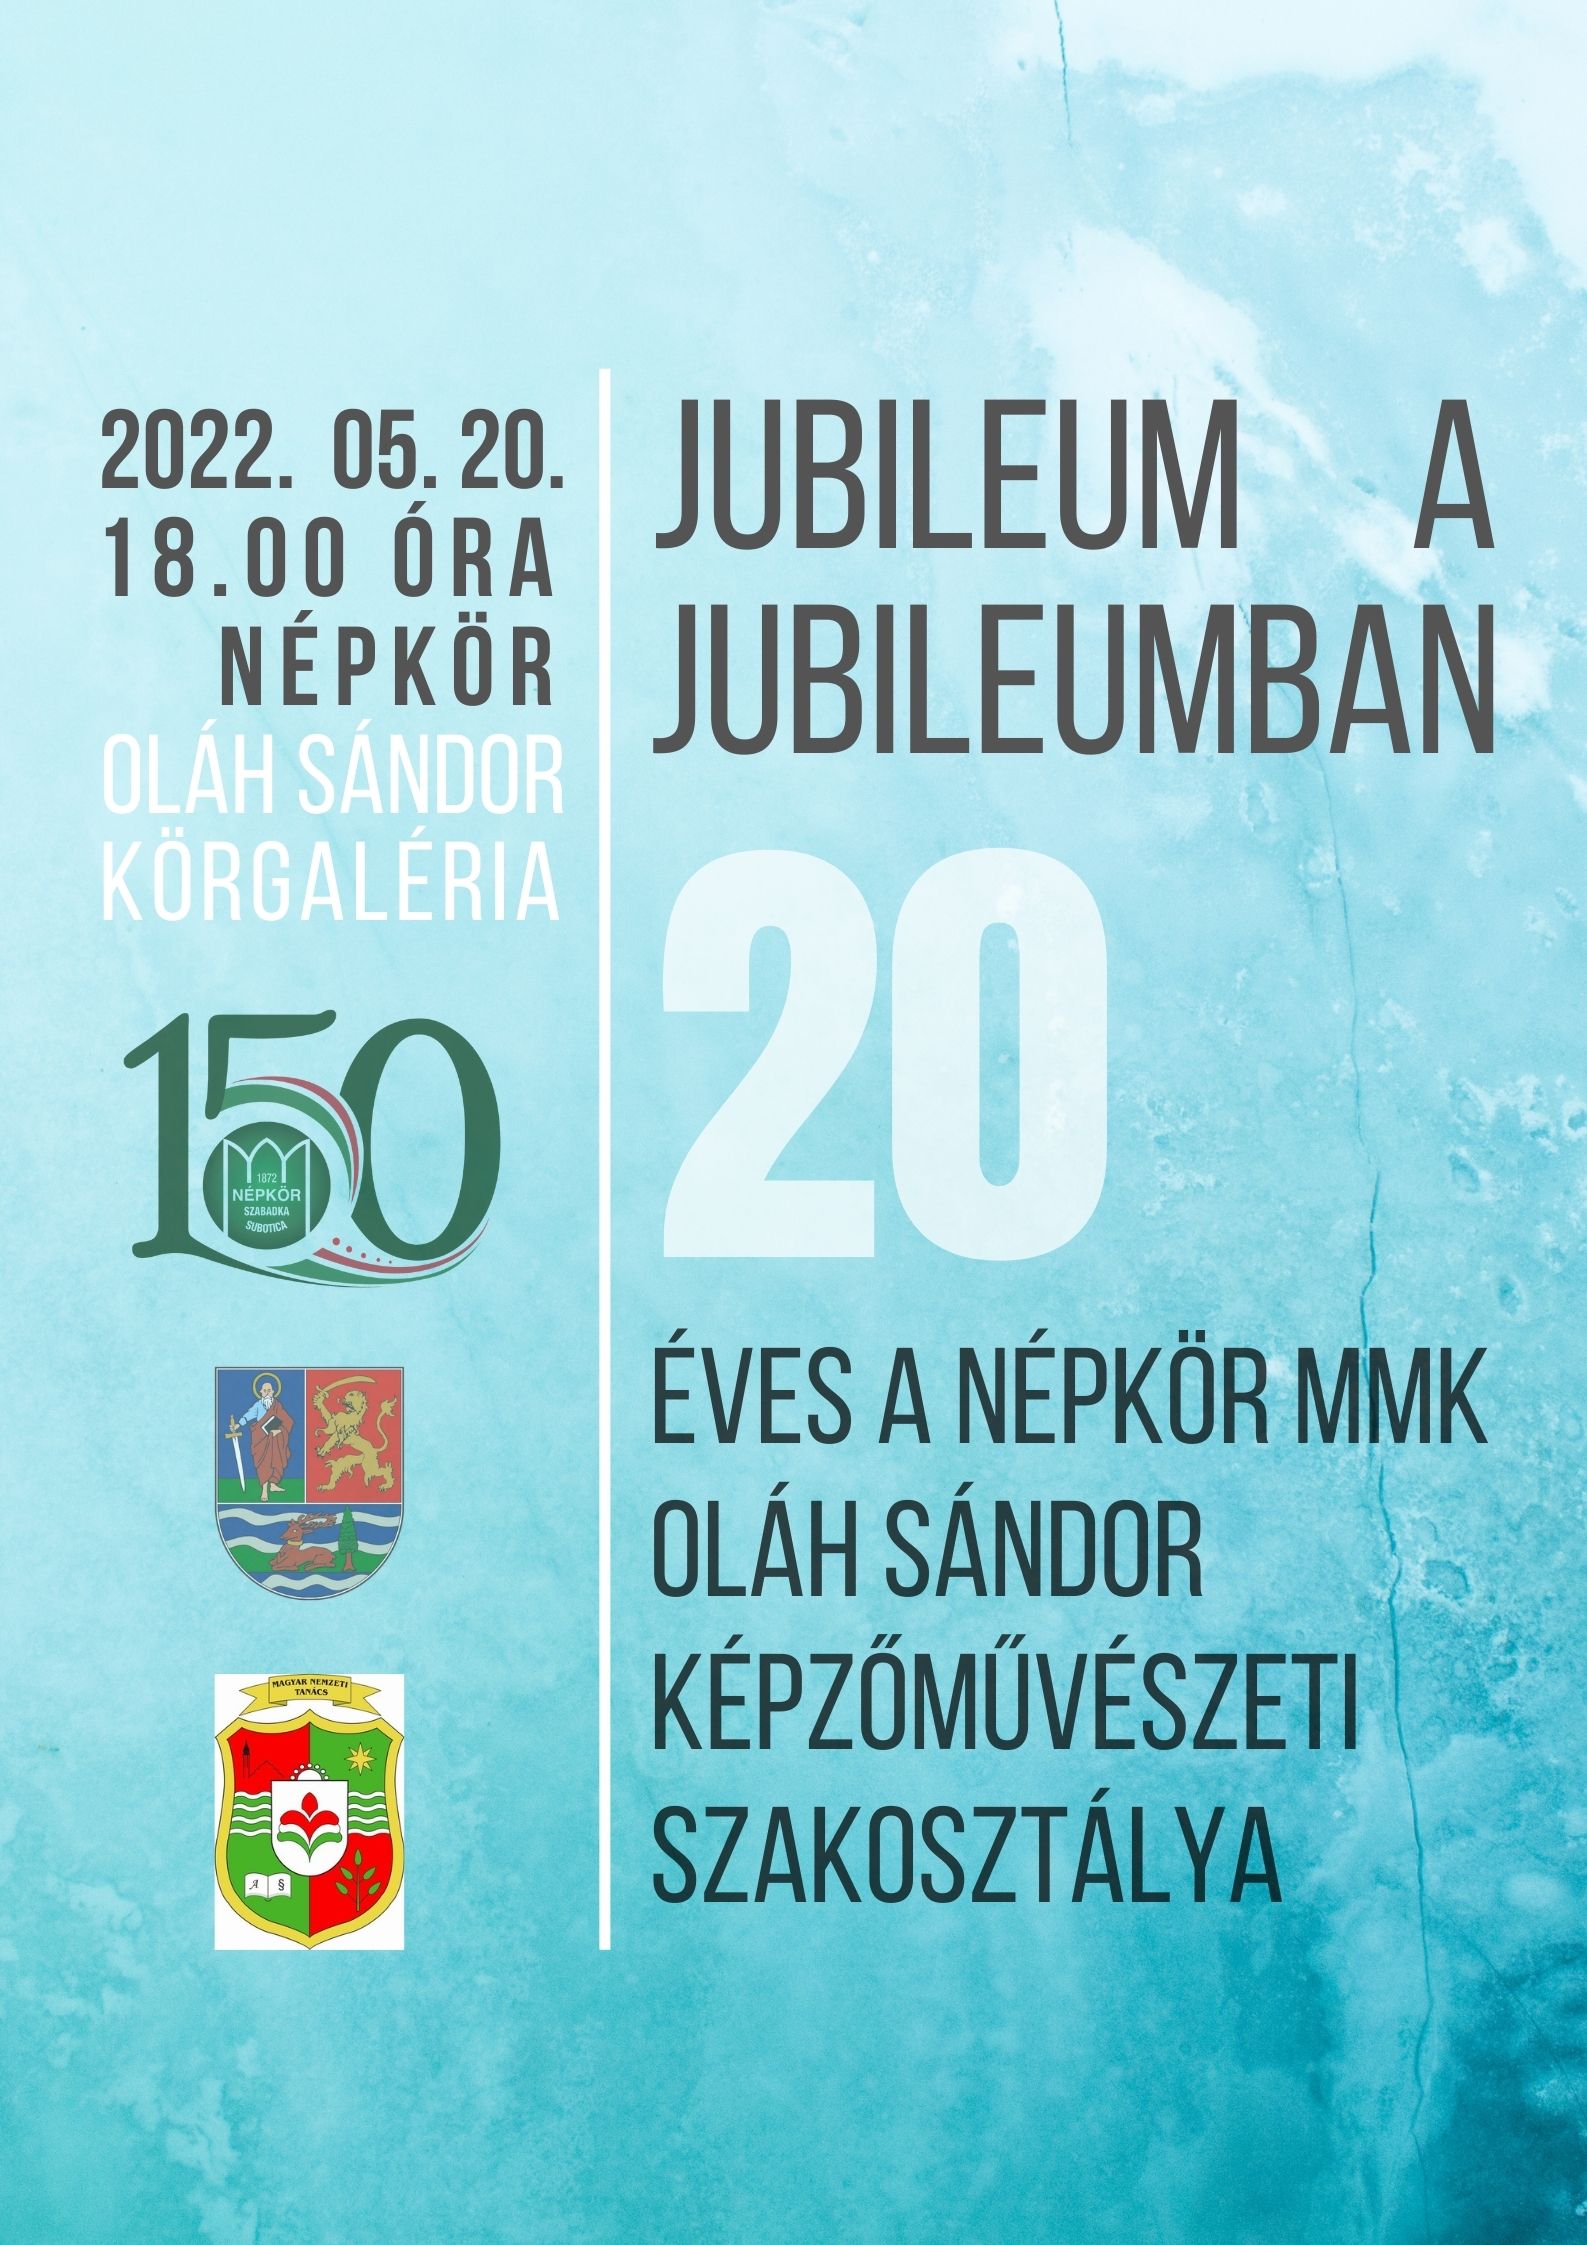 Plakat_Jubileum_a_jubileumban